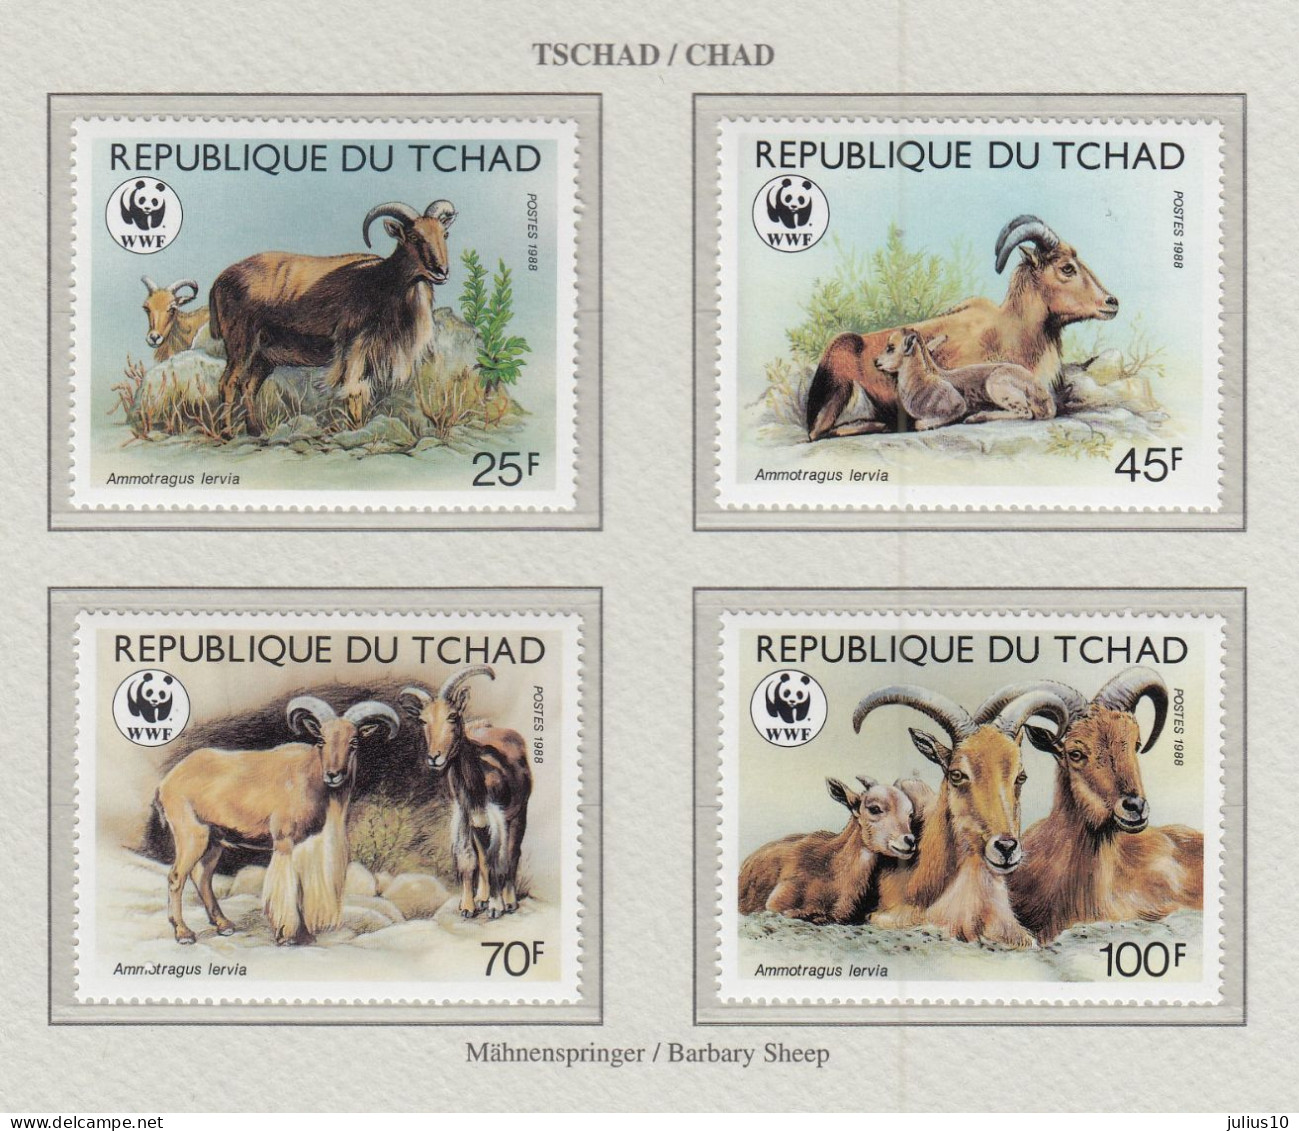 CHAD 1988 WWF Mouflons Animals Mi 1171-1174 MNH(**) Fauna 758 - Ungebraucht